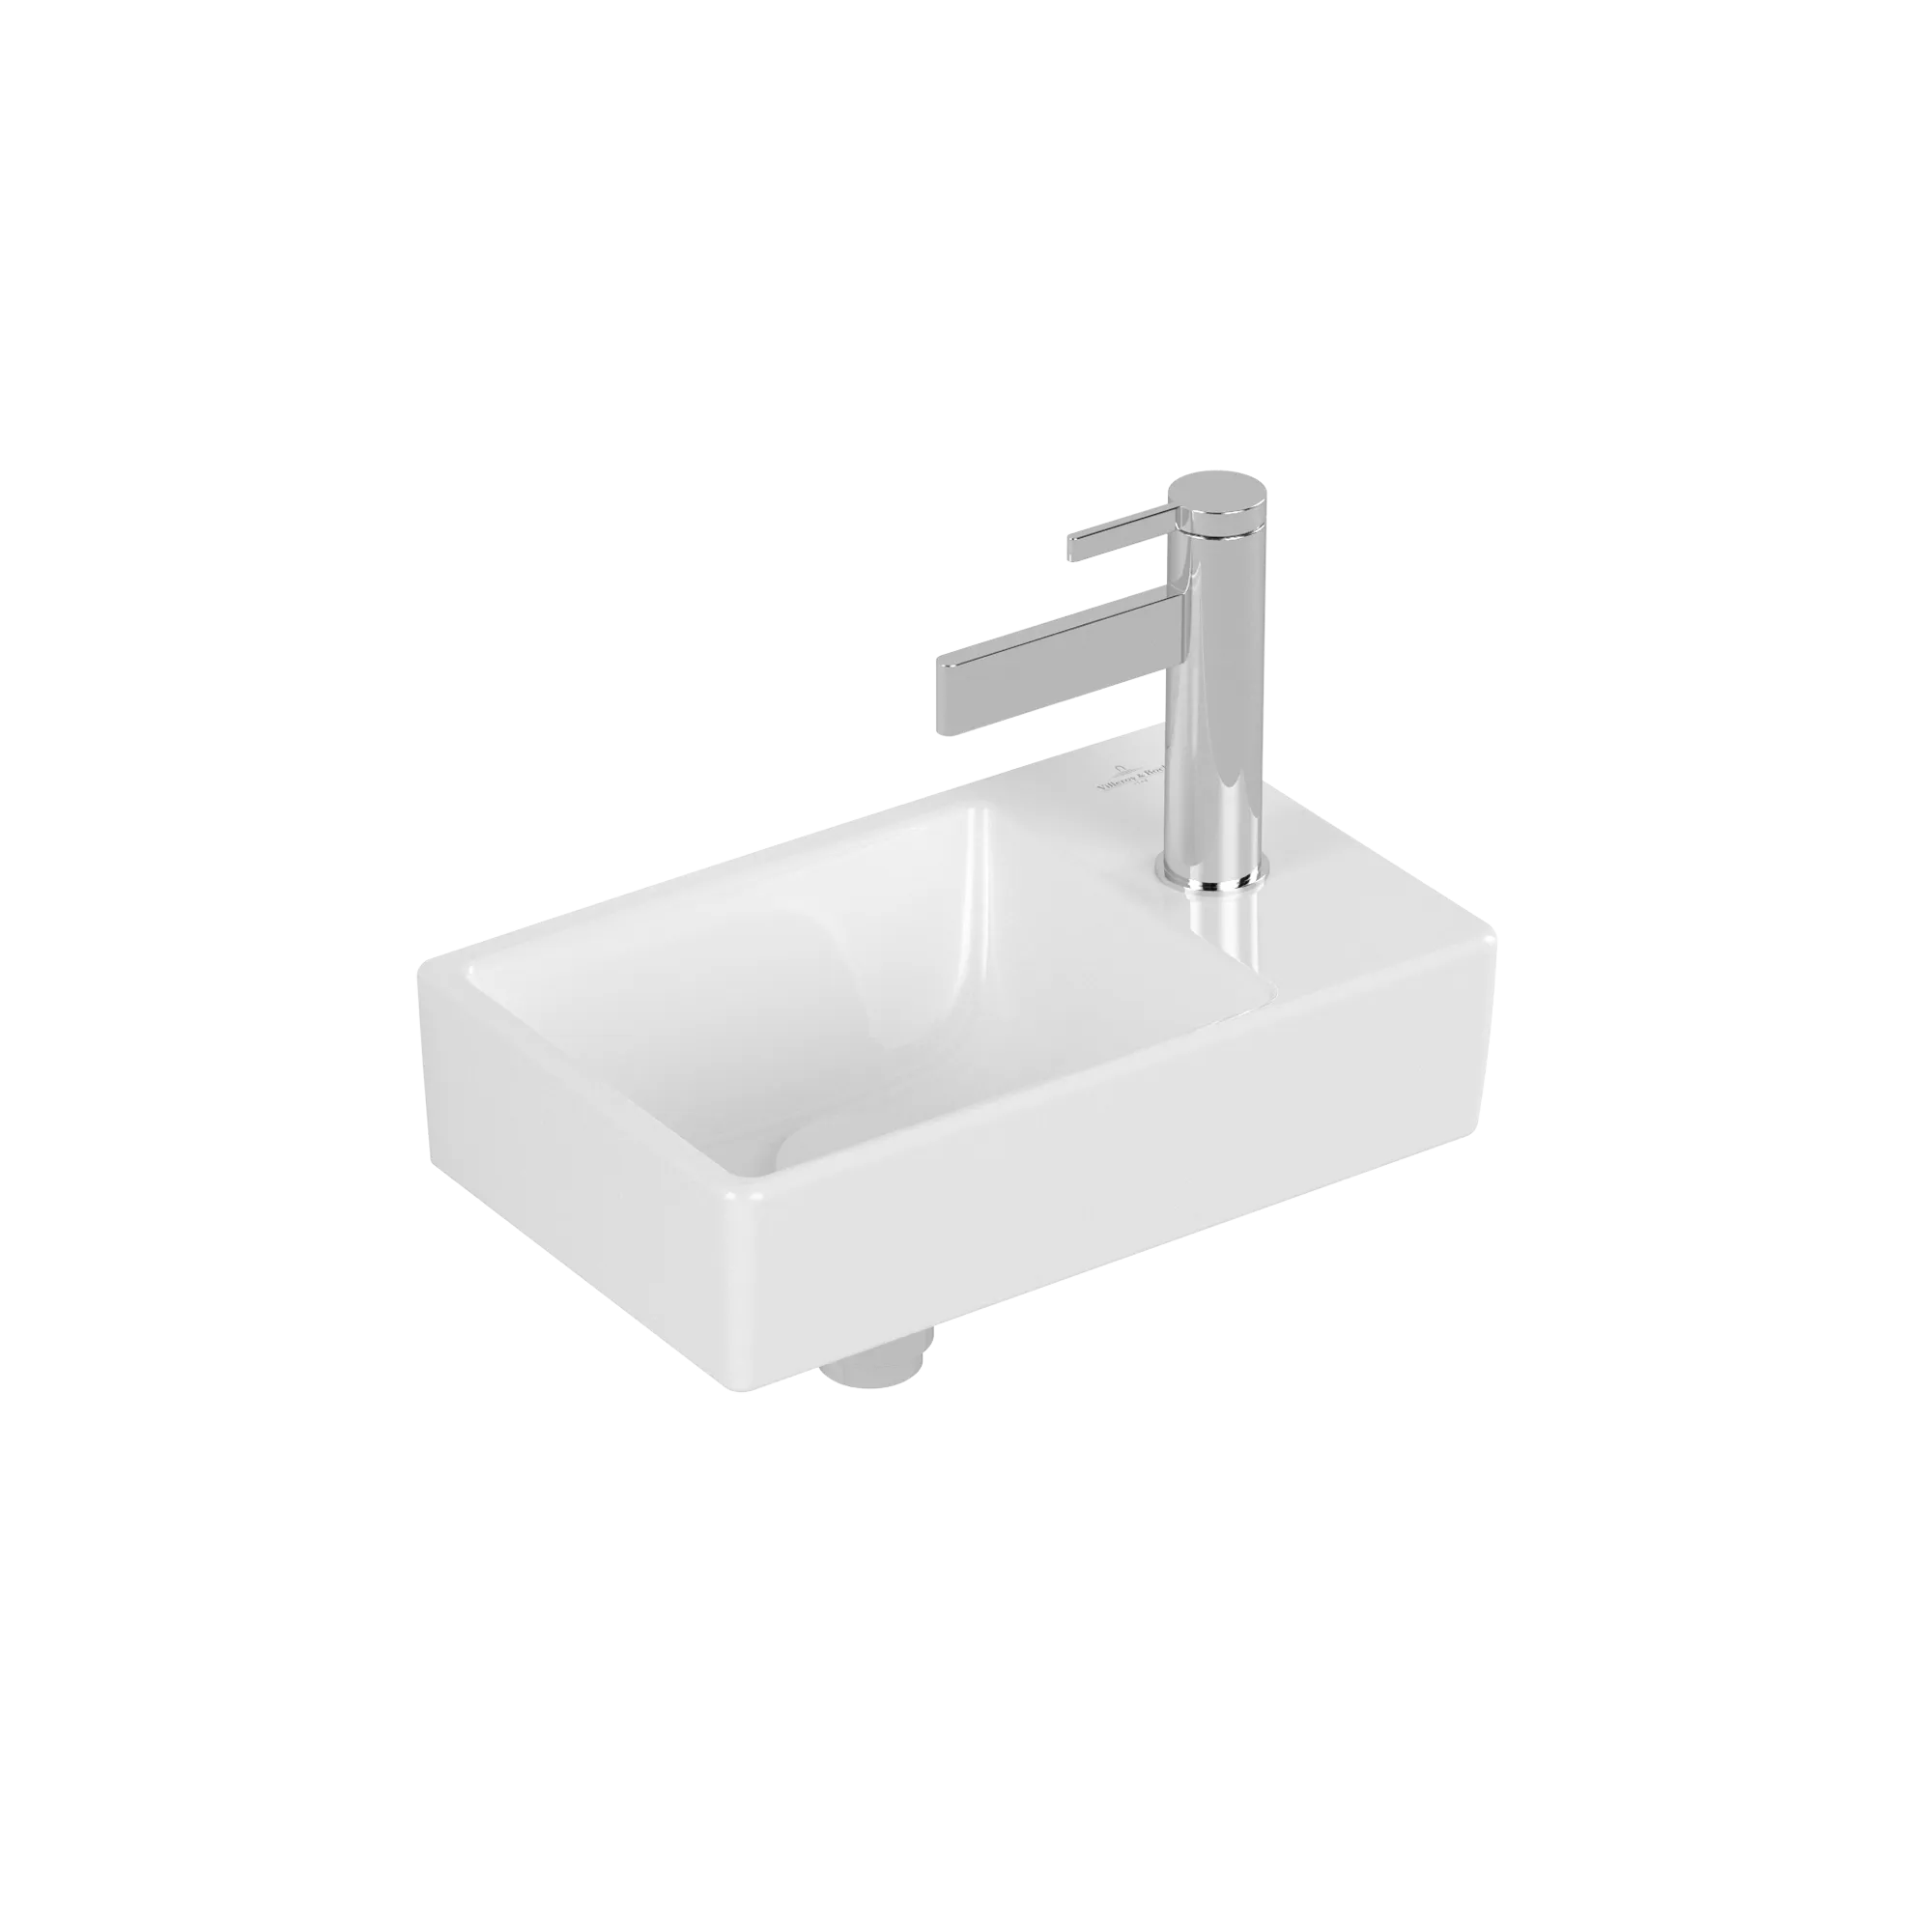 Bild von VILLEROY BOCH Avento Handwaschbecken, 360 x 220 x 110 mm, Weiß Alpin, ohne Überlauf #43003L01